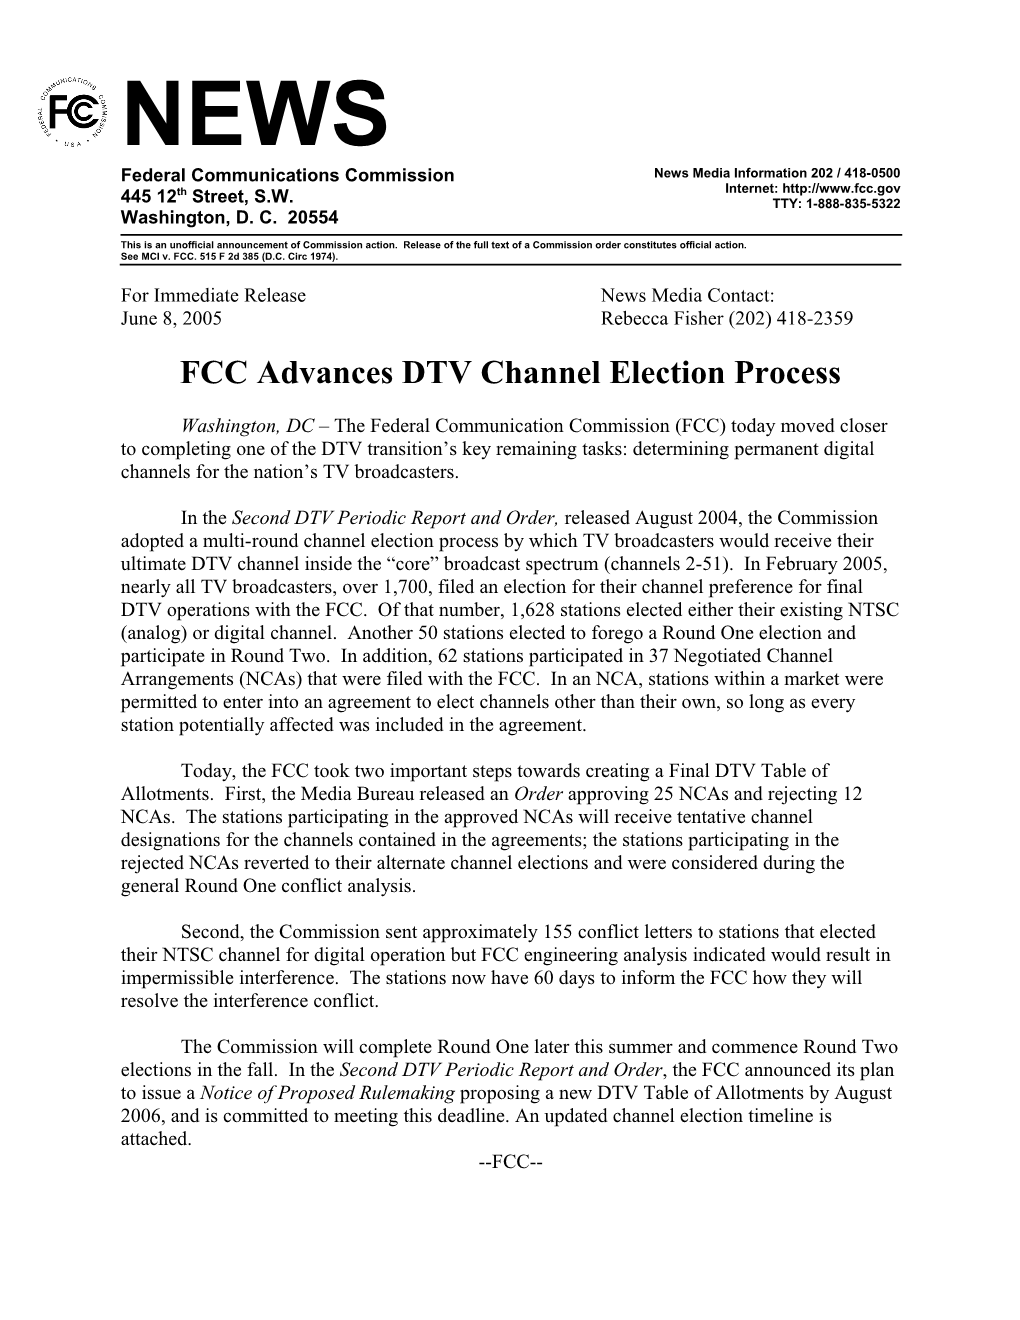 FCC Advances DTV Channel Election Process